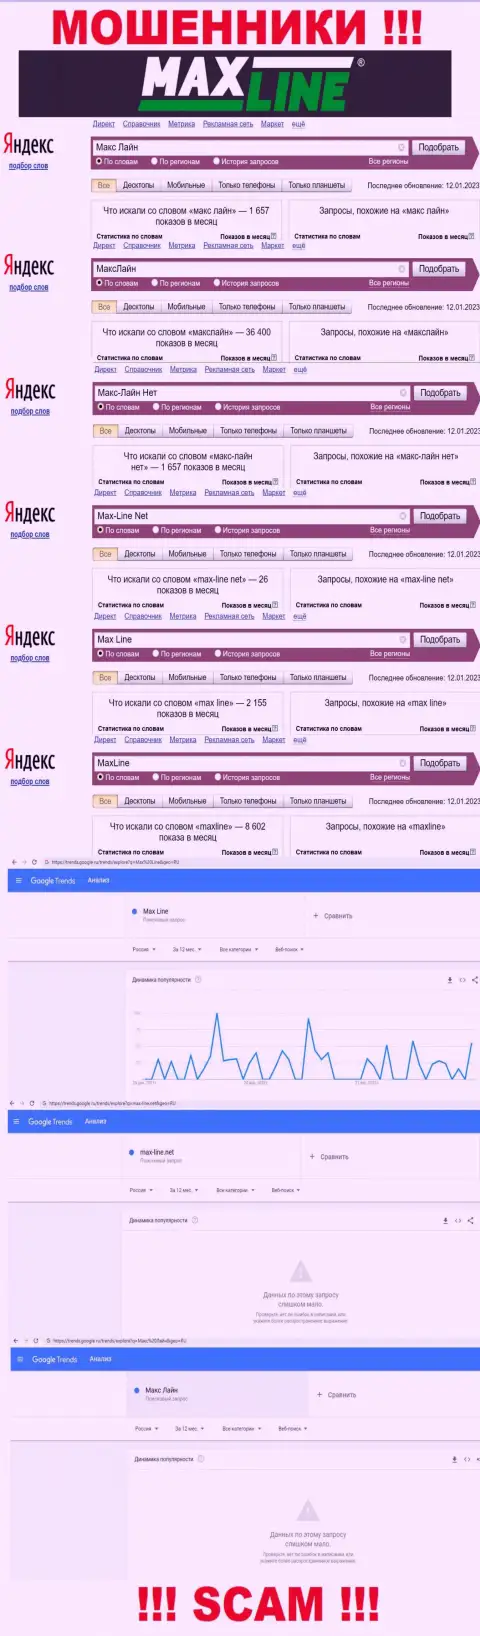 Количество поисковых запросов в глобальной сети интернет по бренду мошенников Max-Line